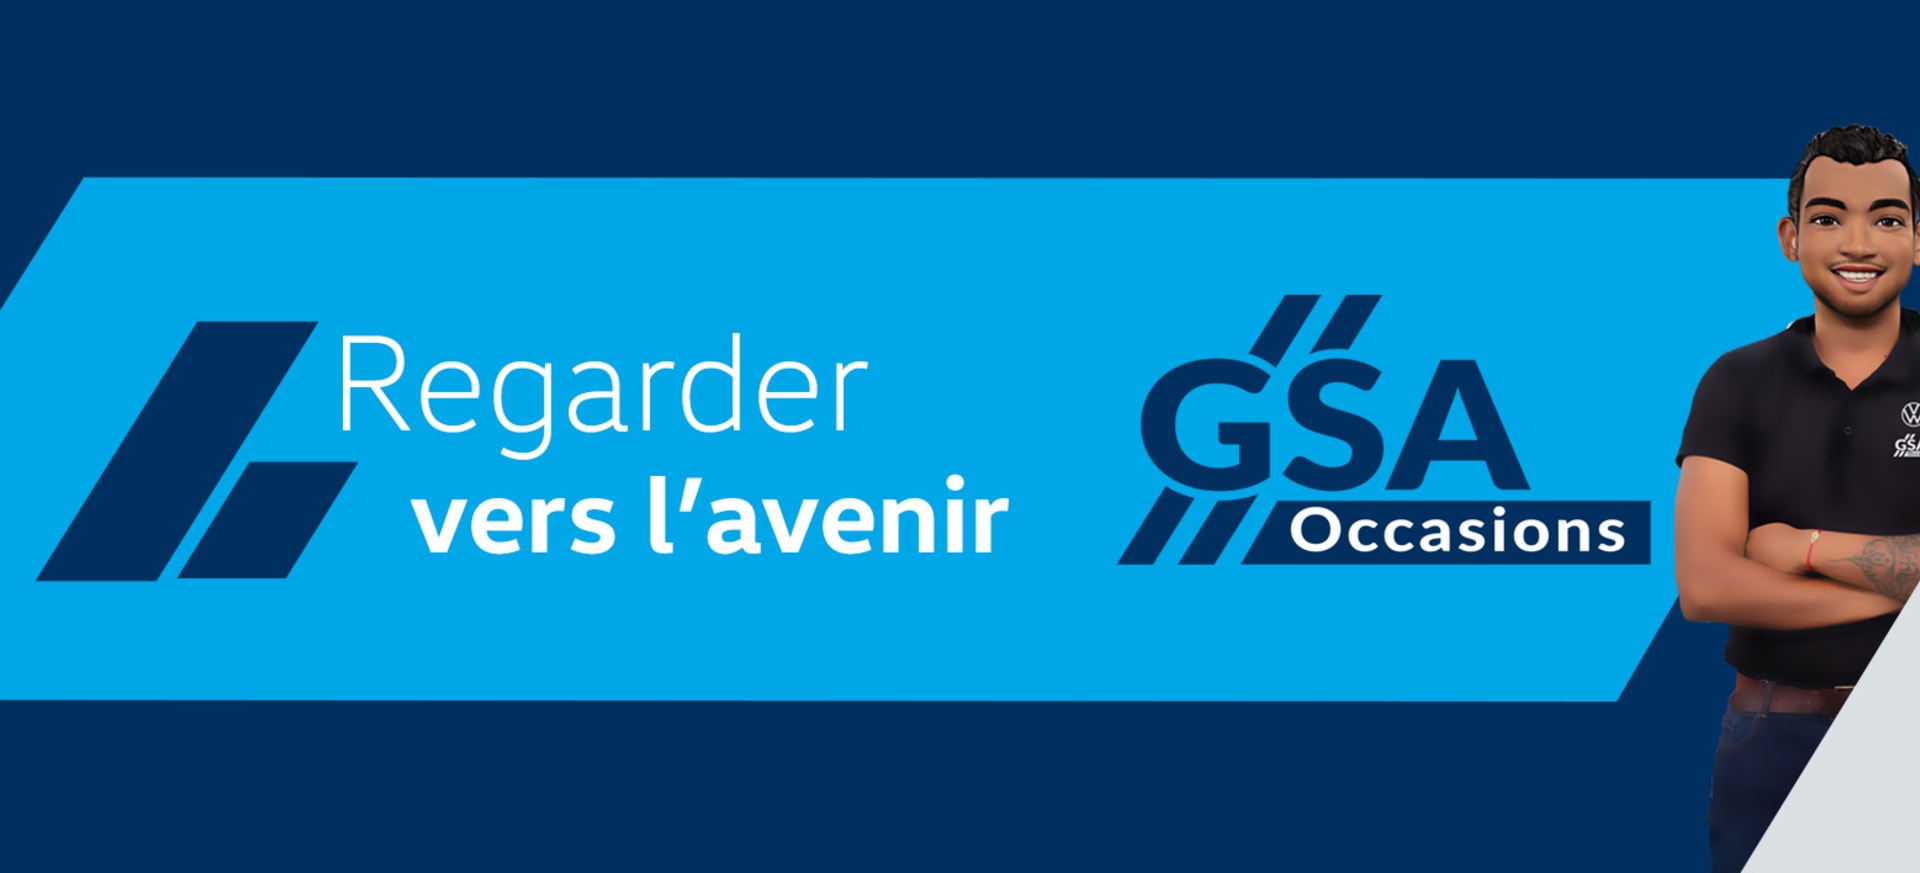 Nouveau logo GSA Occasions